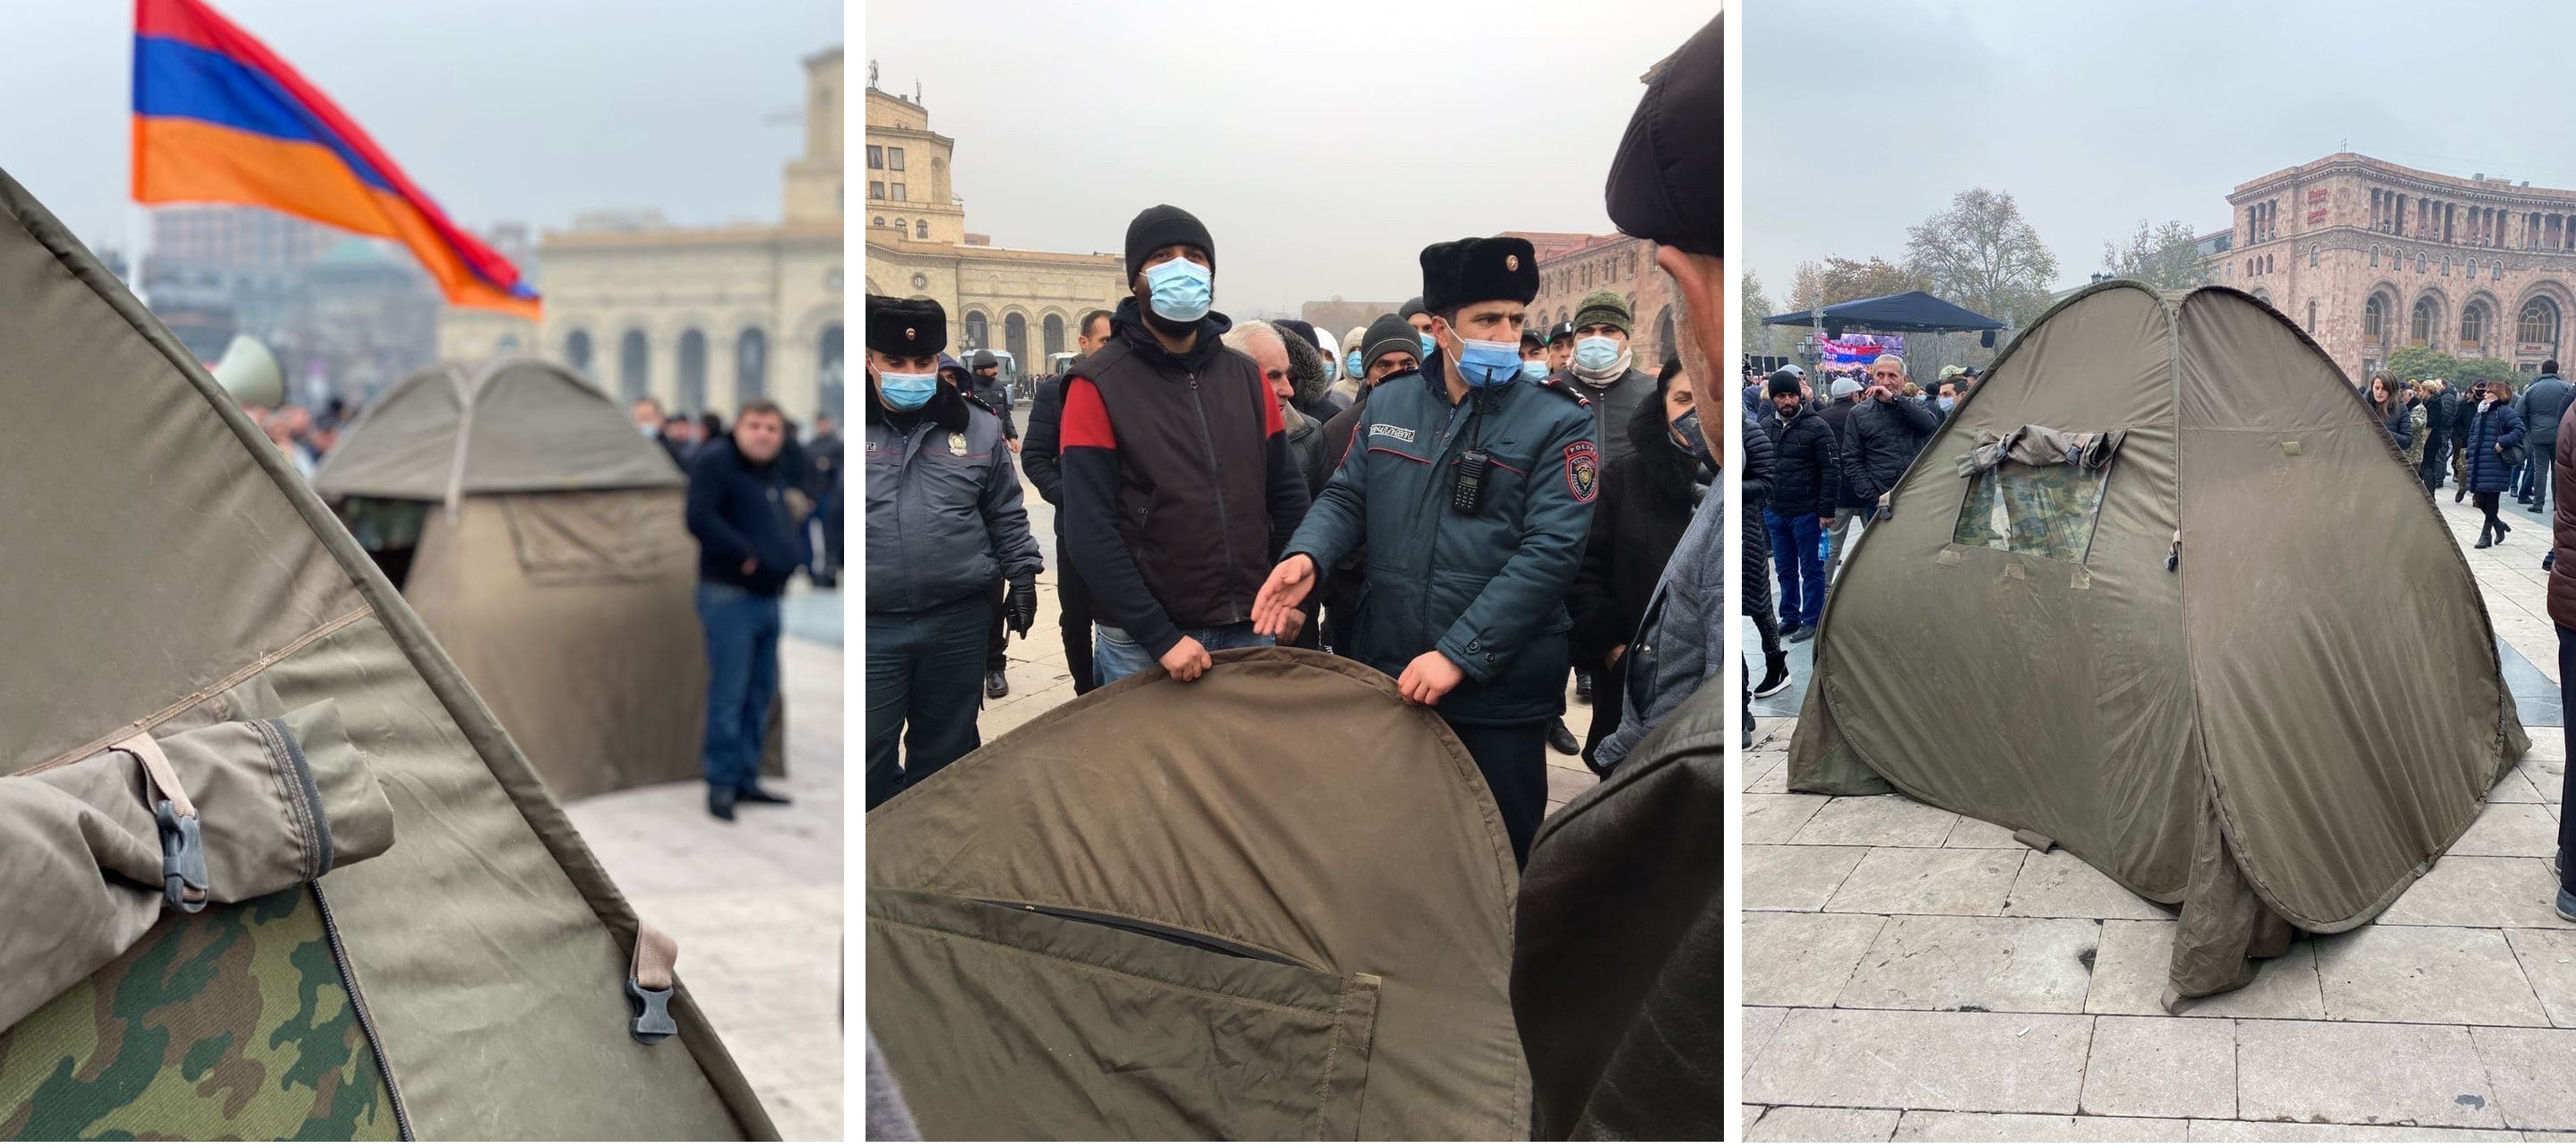 Иного выхода нет: оппозиция разбила палатки на площади Республики